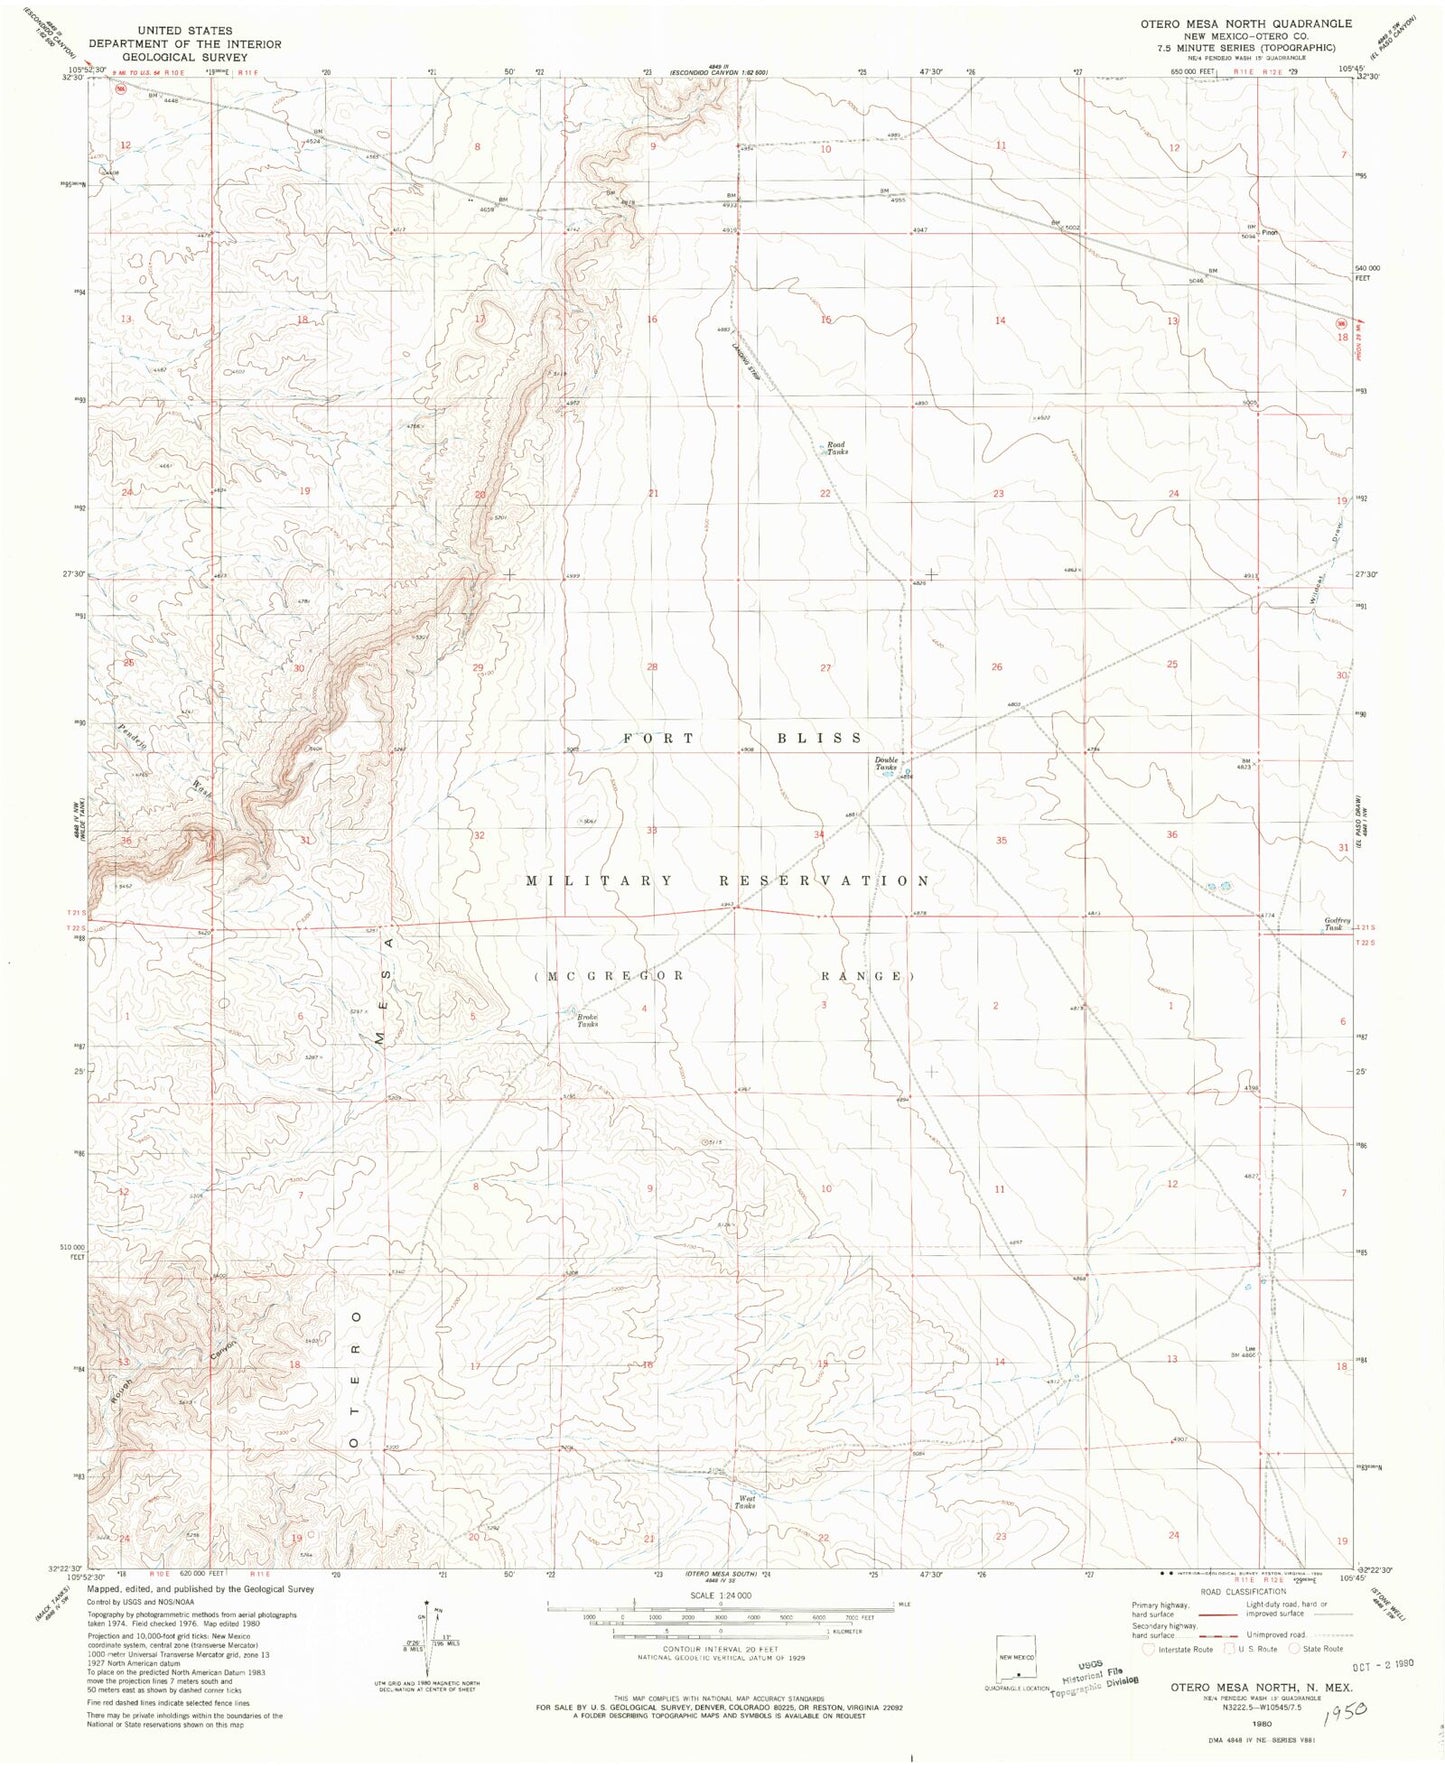 Classic USGS Otero Mesa North New Mexico 7.5'x7.5' Topo Map Image